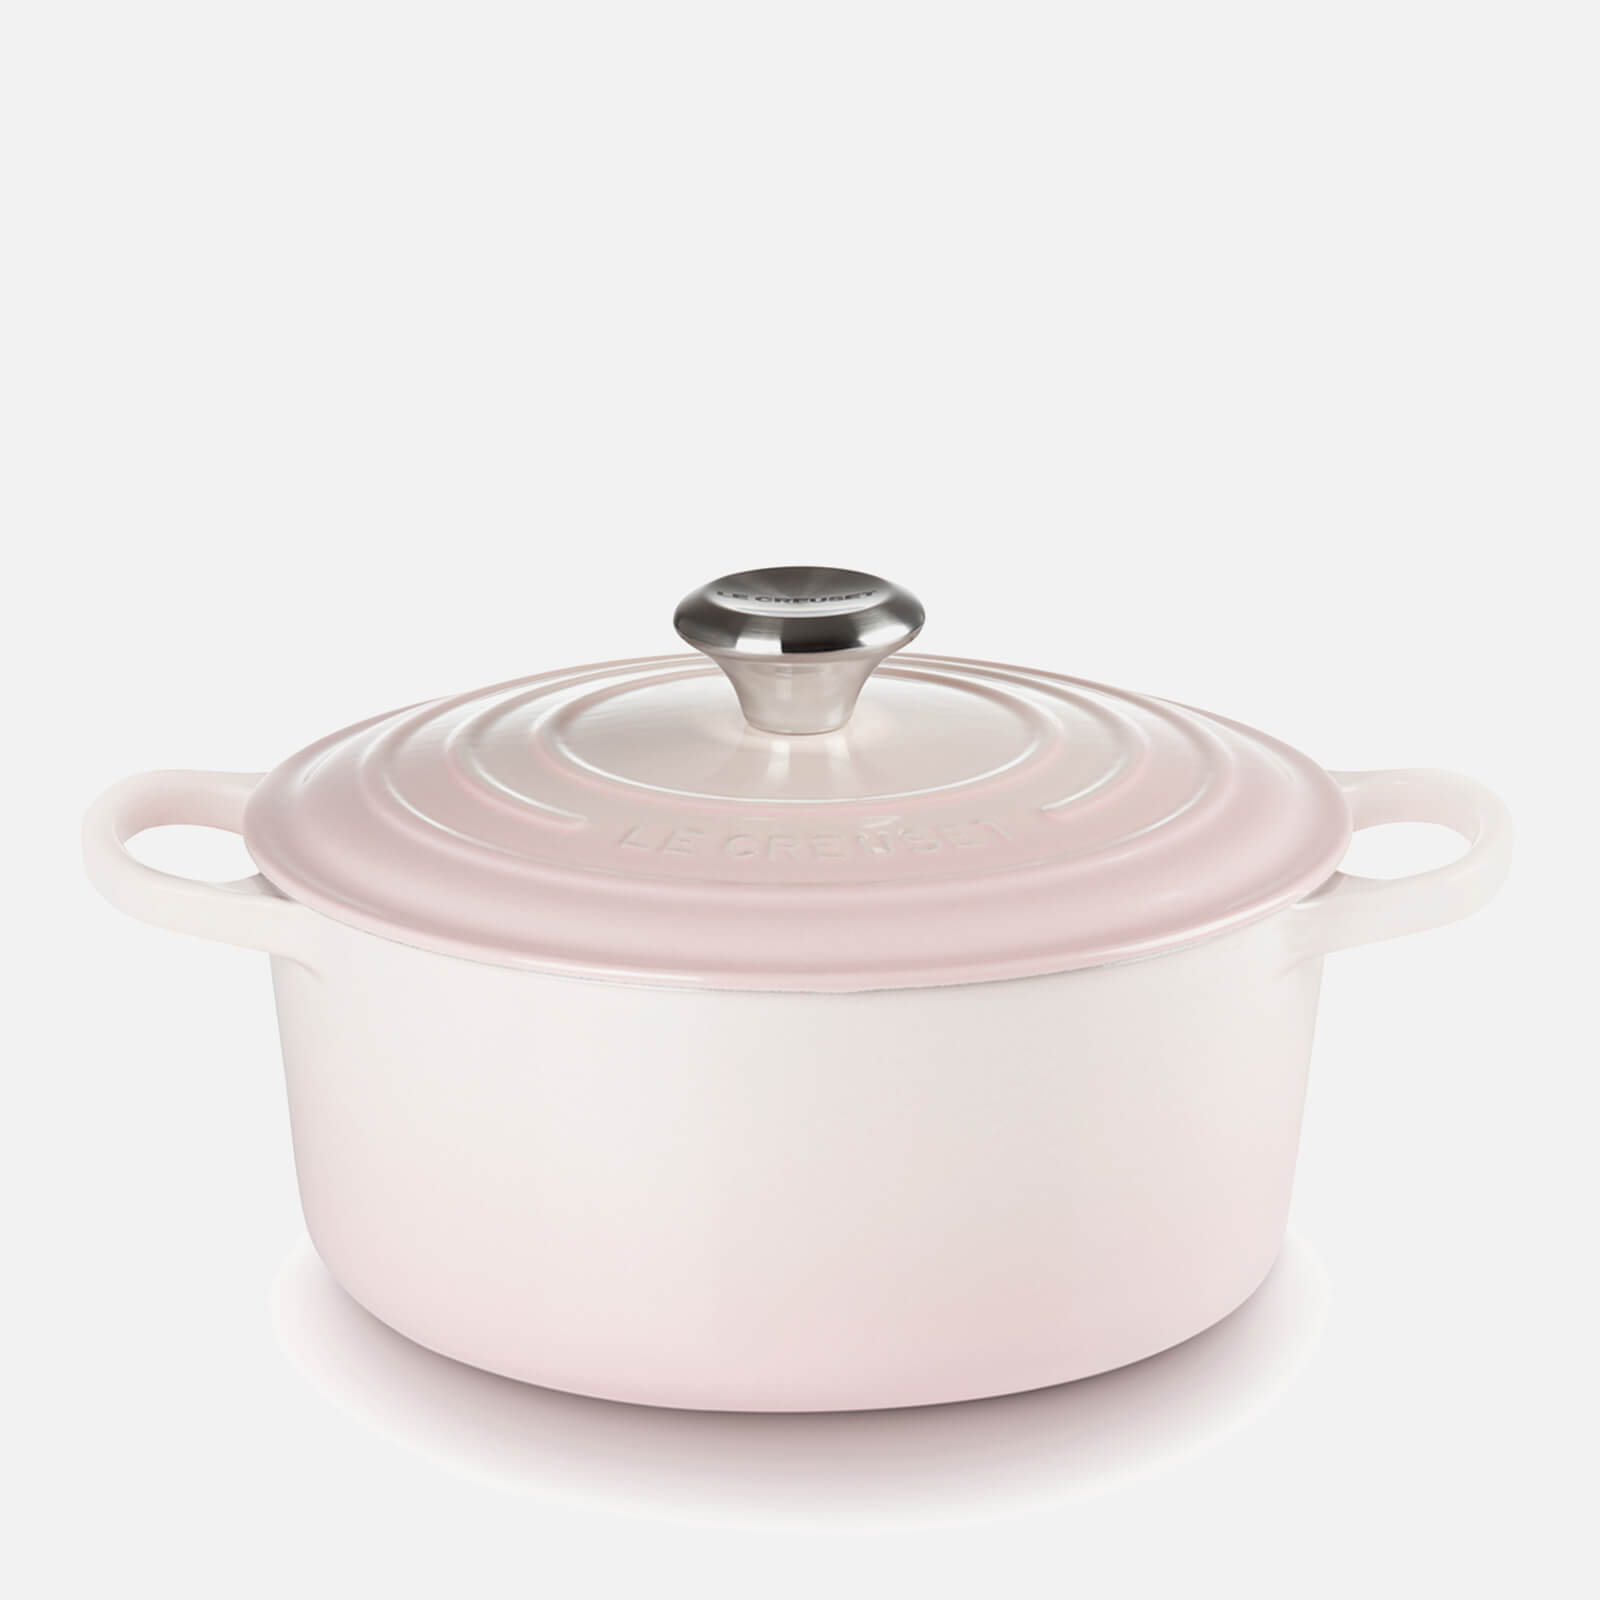 Le Creuset Signature Cast Iron Round Casserole Dish - 28cm - Shell Pink von Le Creuset